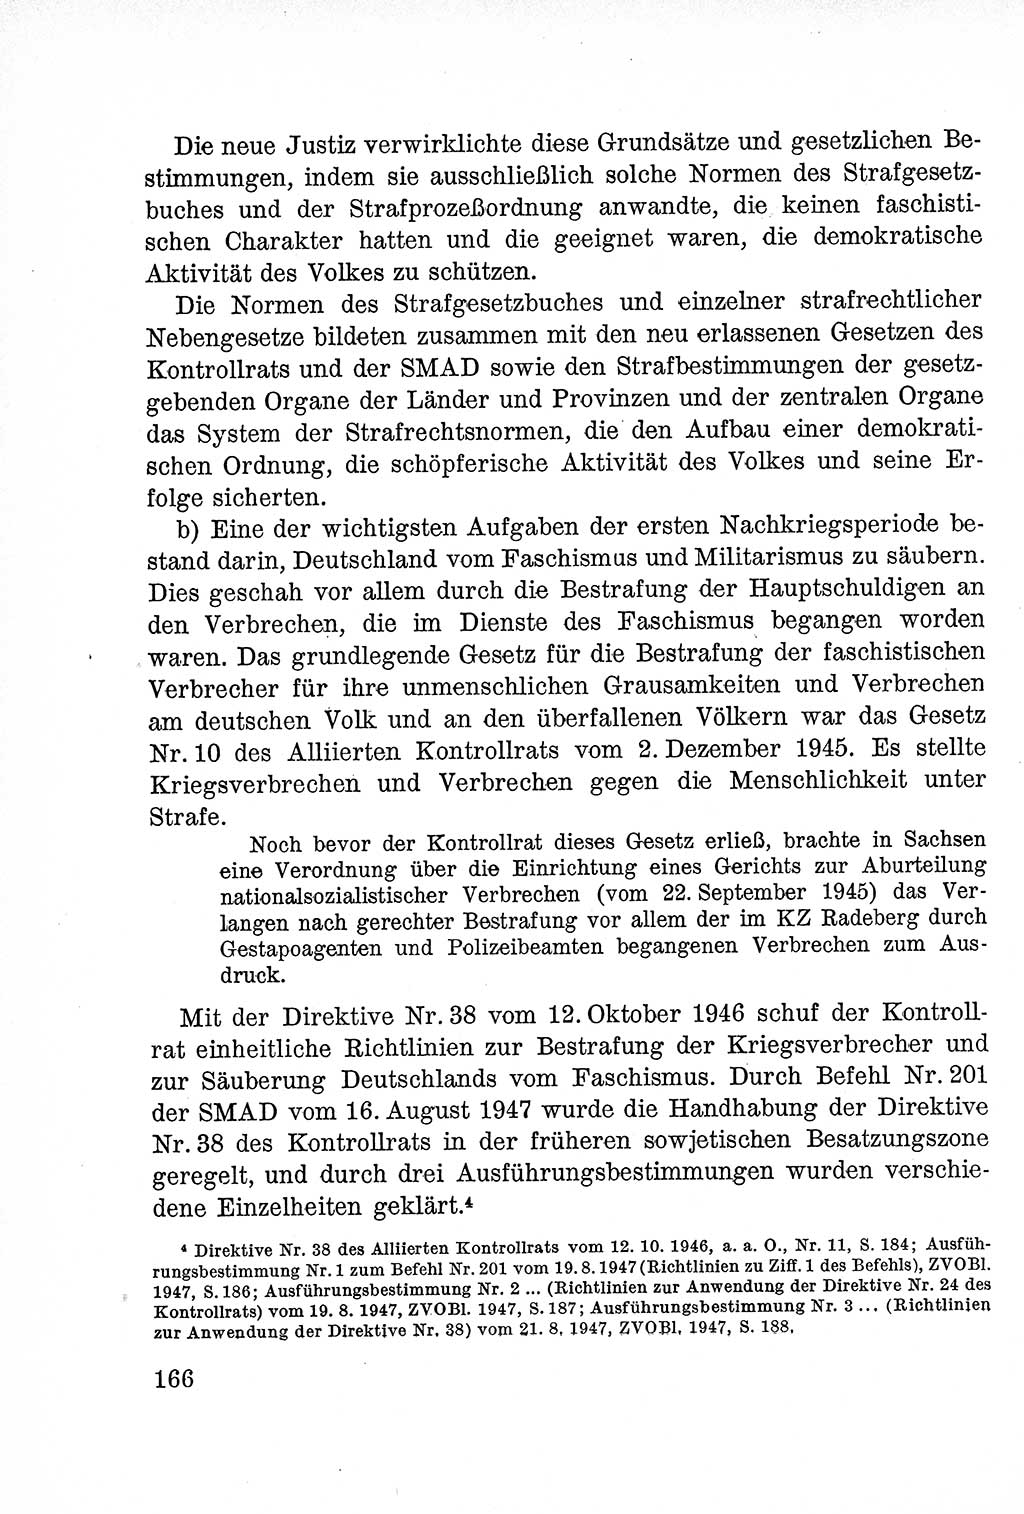 Lehrbuch des Strafrechts der Deutschen Demokratischen Republik (DDR), Allgemeiner Teil 1957, Seite 166 (Lb. Strafr. DDR AT 1957, S. 166)